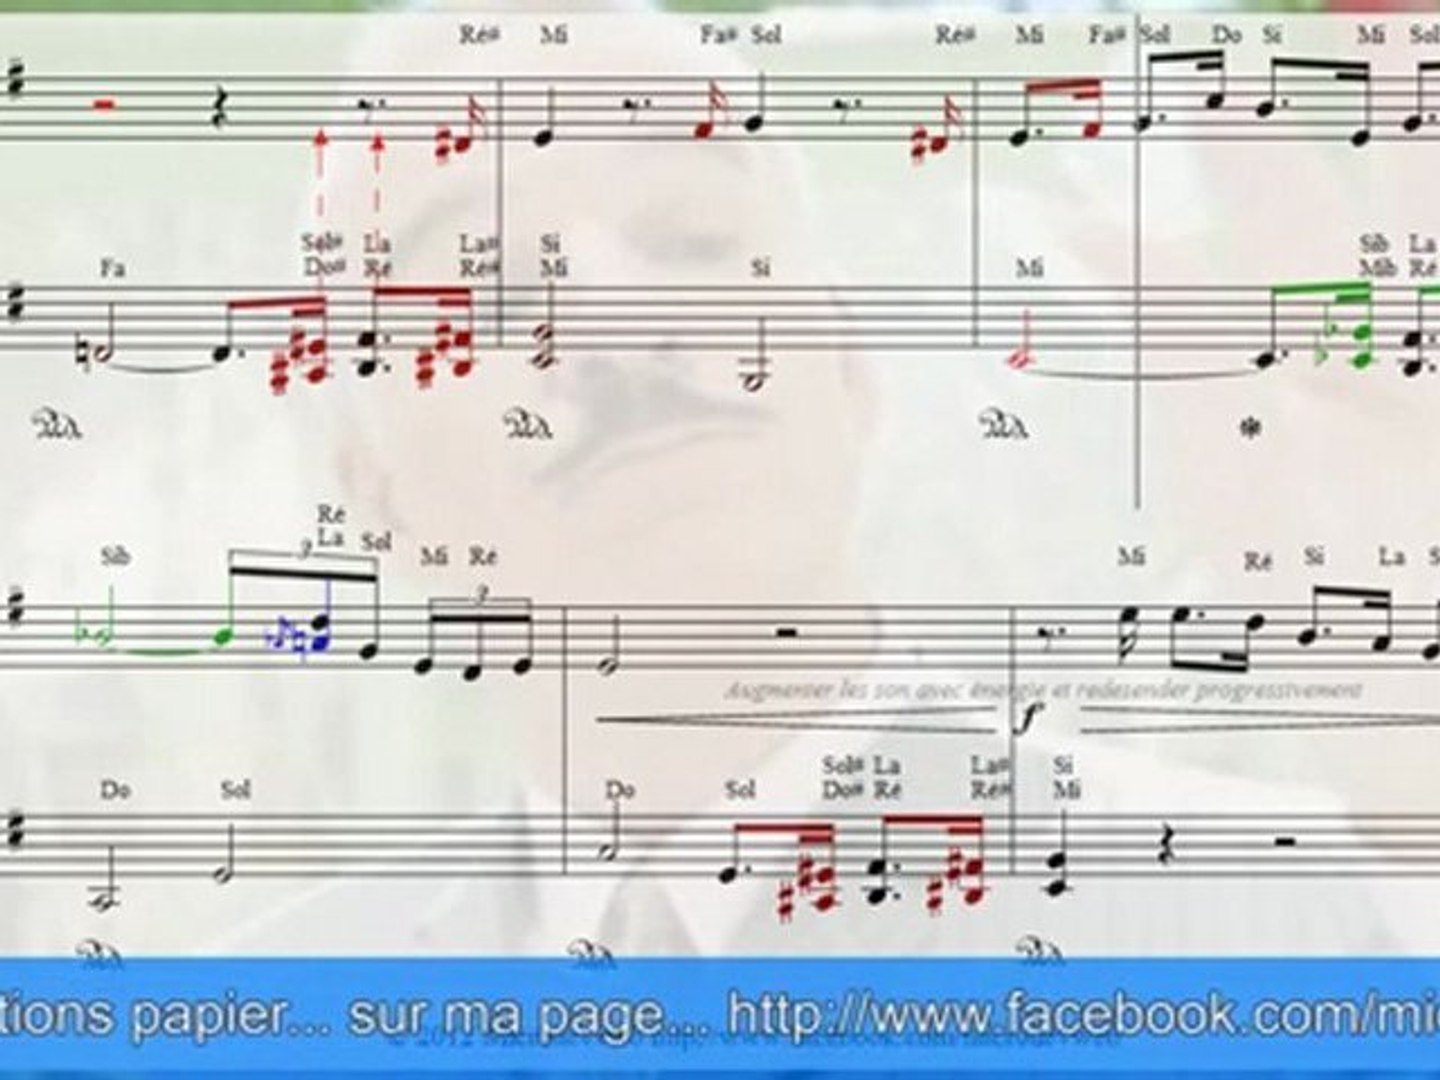 La panthere rose au piano - Vidéo Dailymotion